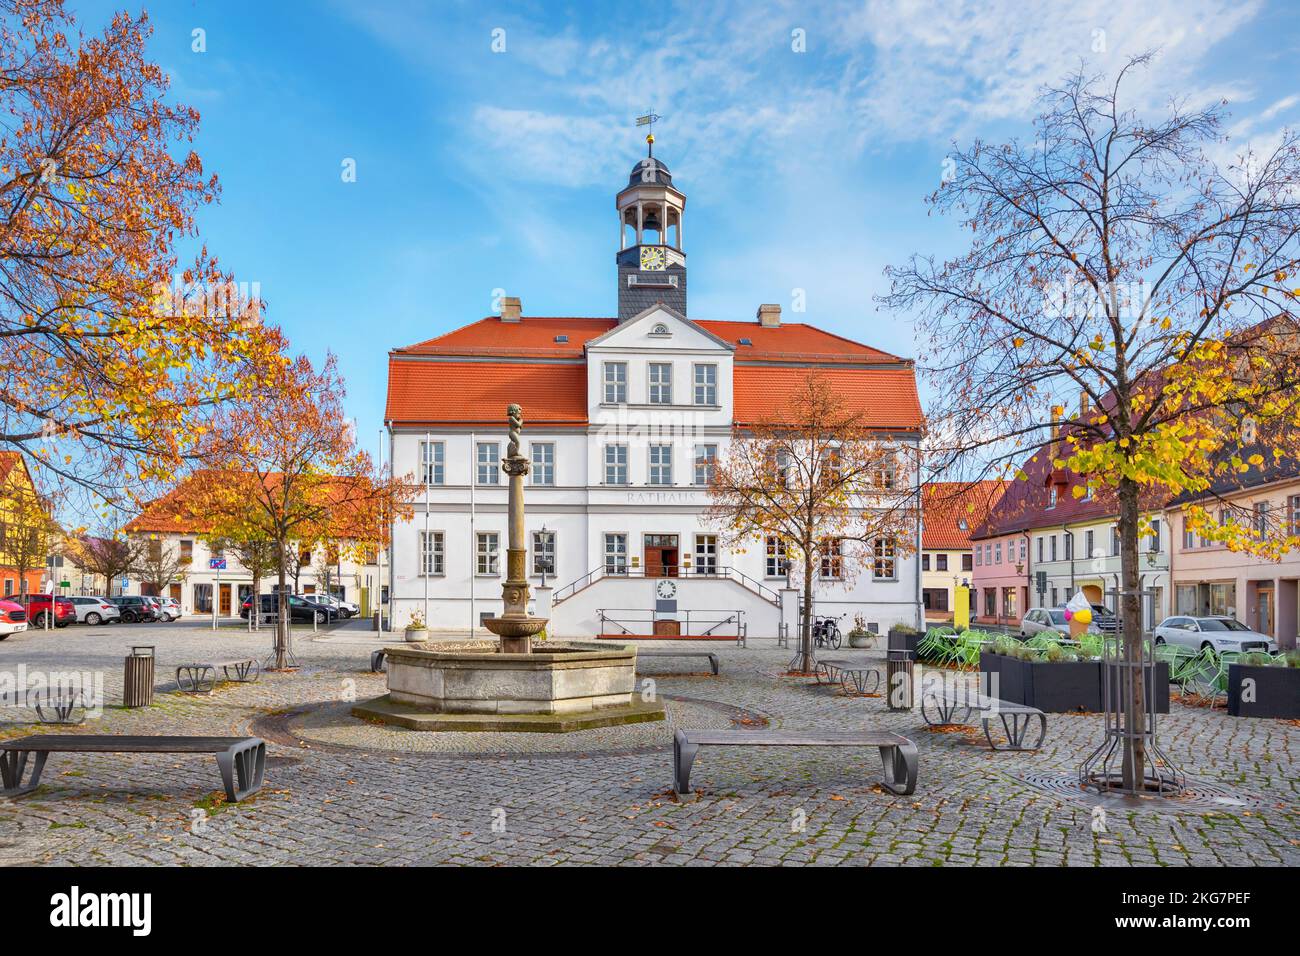 Bad Duben, Alemania. Vista del edificio histórico del Ayuntamiento (Rathaus) situado en la plaza Markt Foto de stock